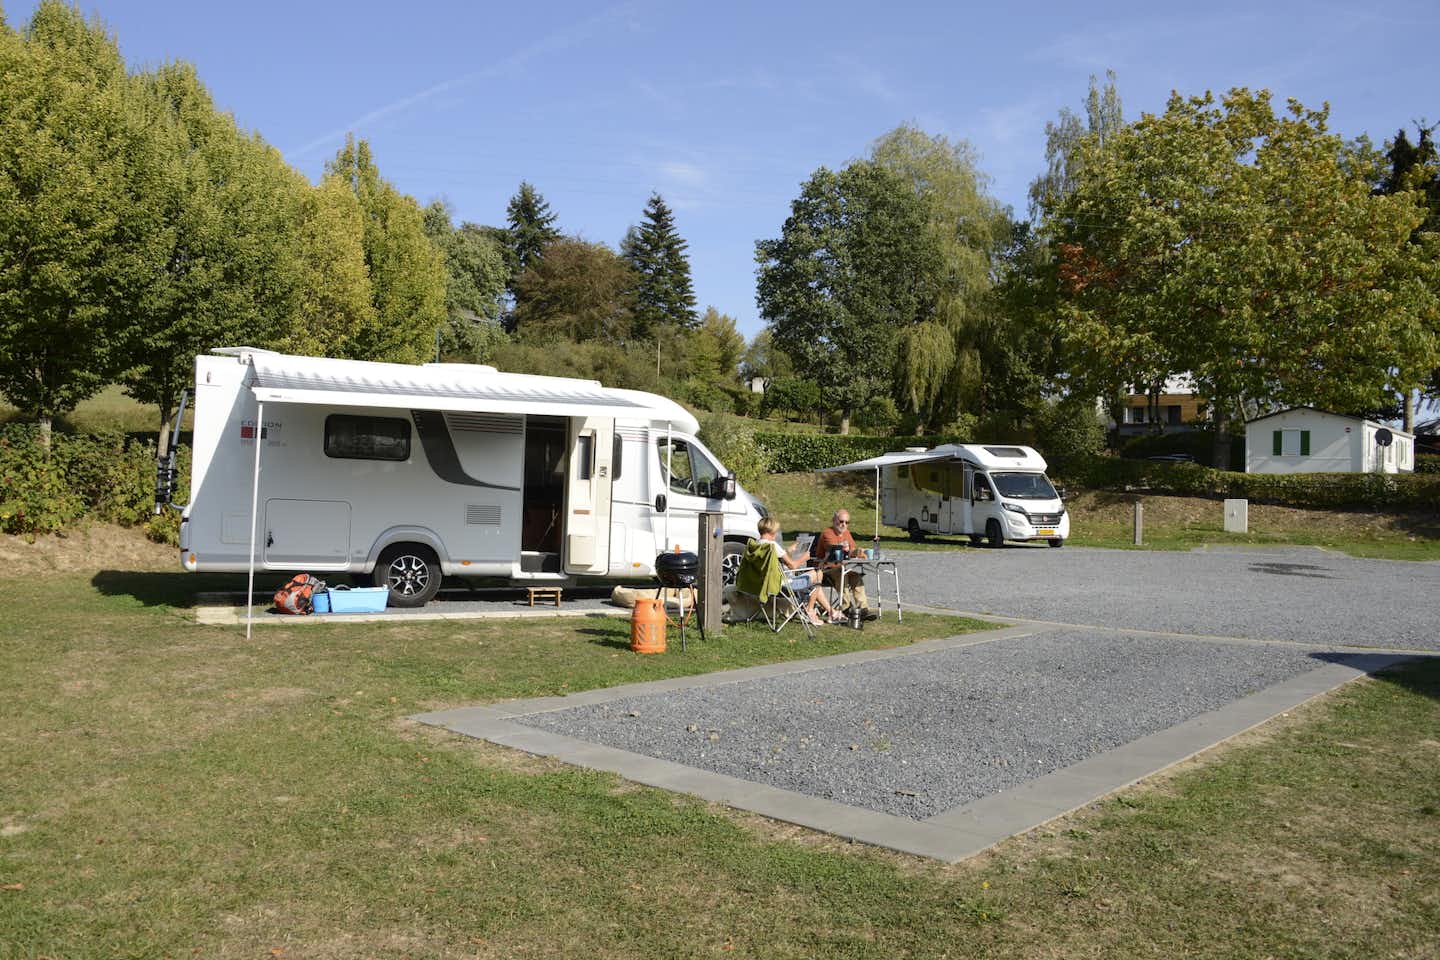 Camping Liefrange - Camper, die vor ihrem Wohnmobil sitzen